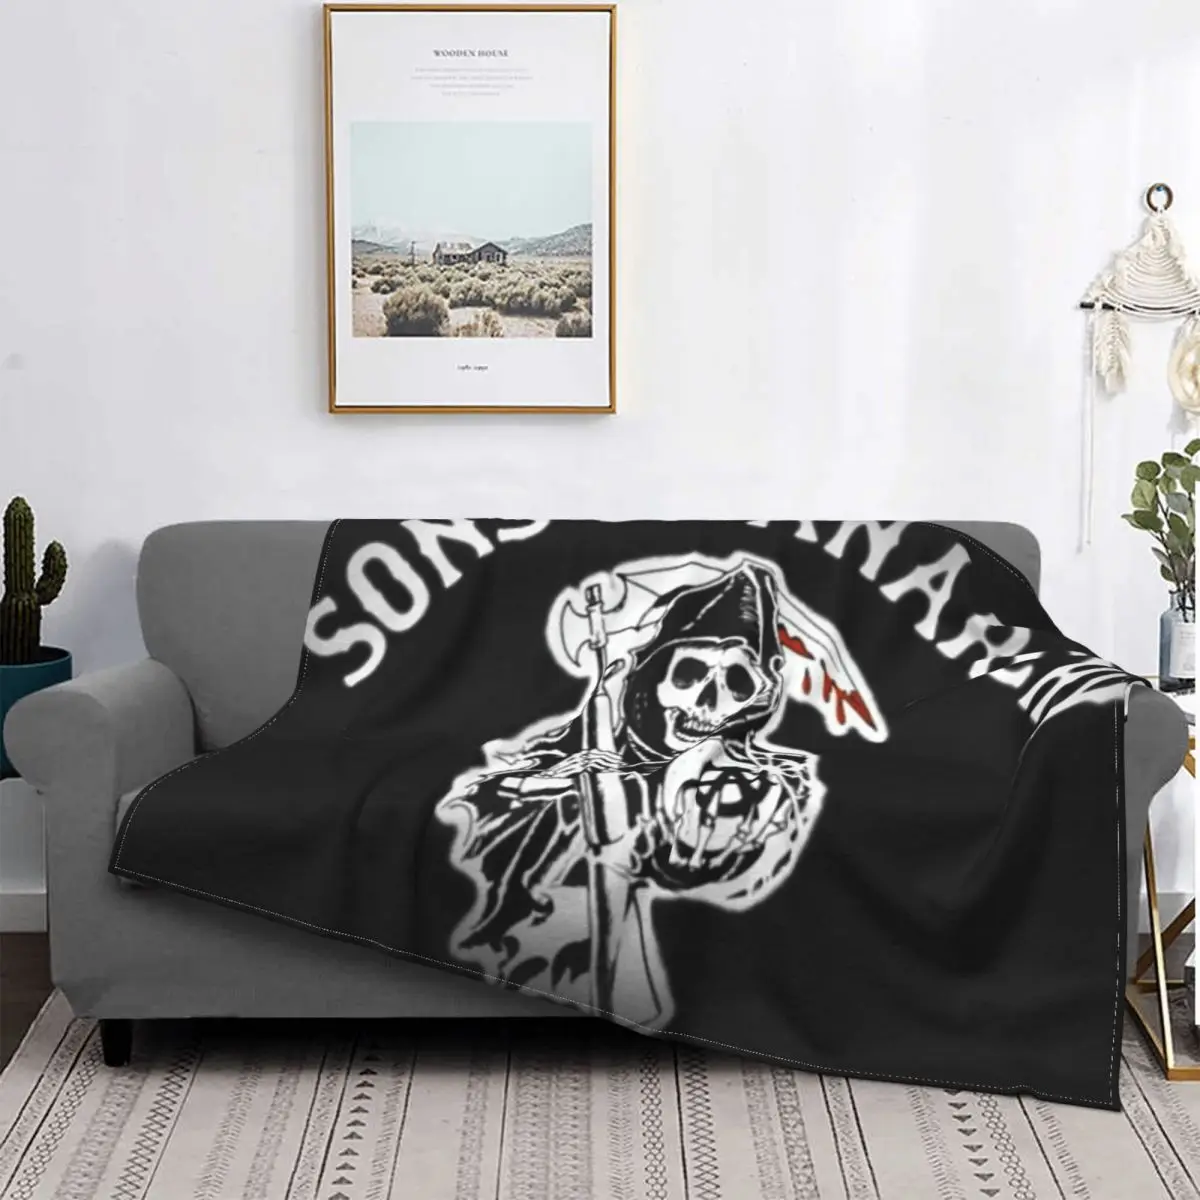 

Одеяло Сын анархии 2027, покрывало на кровать, клетчатое детское одеяло, покрывала для новорожденных, пляжное полотенце, роскошное